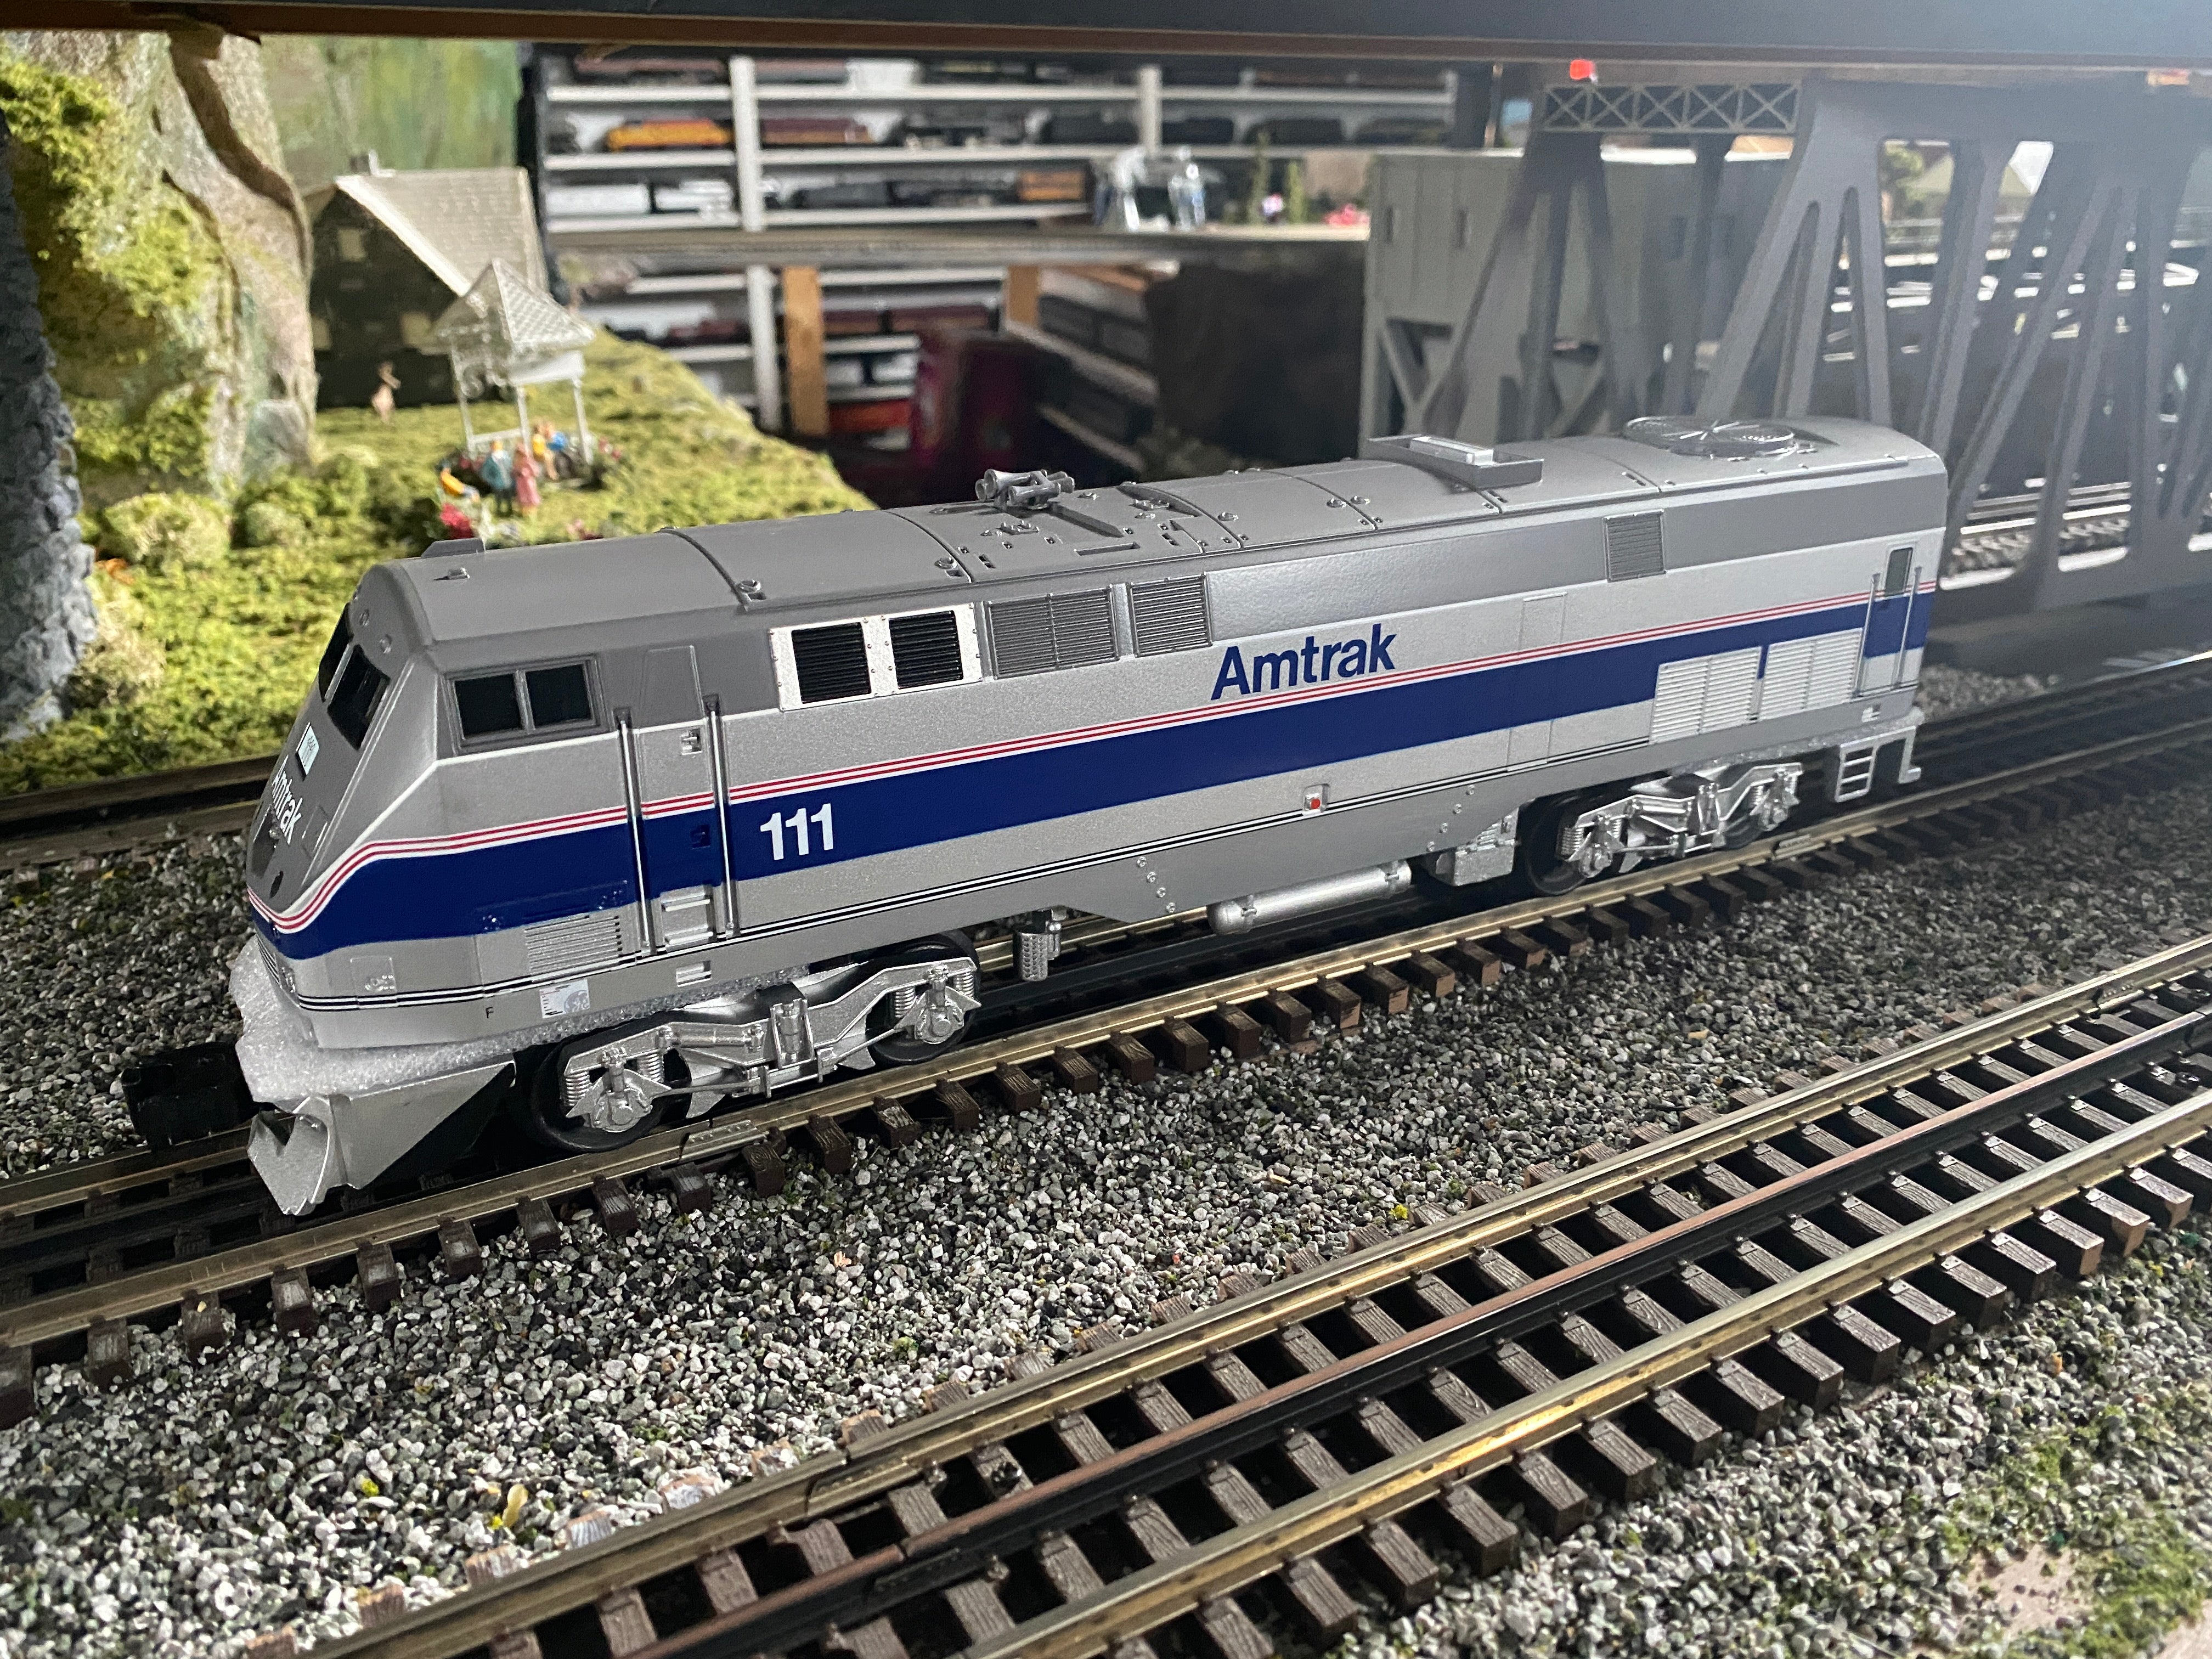 Lionel 2234060 - LionChief+ 2.0 Genesis Diesel Locomotive "Amtrak" #111 (NEC Phase IV)